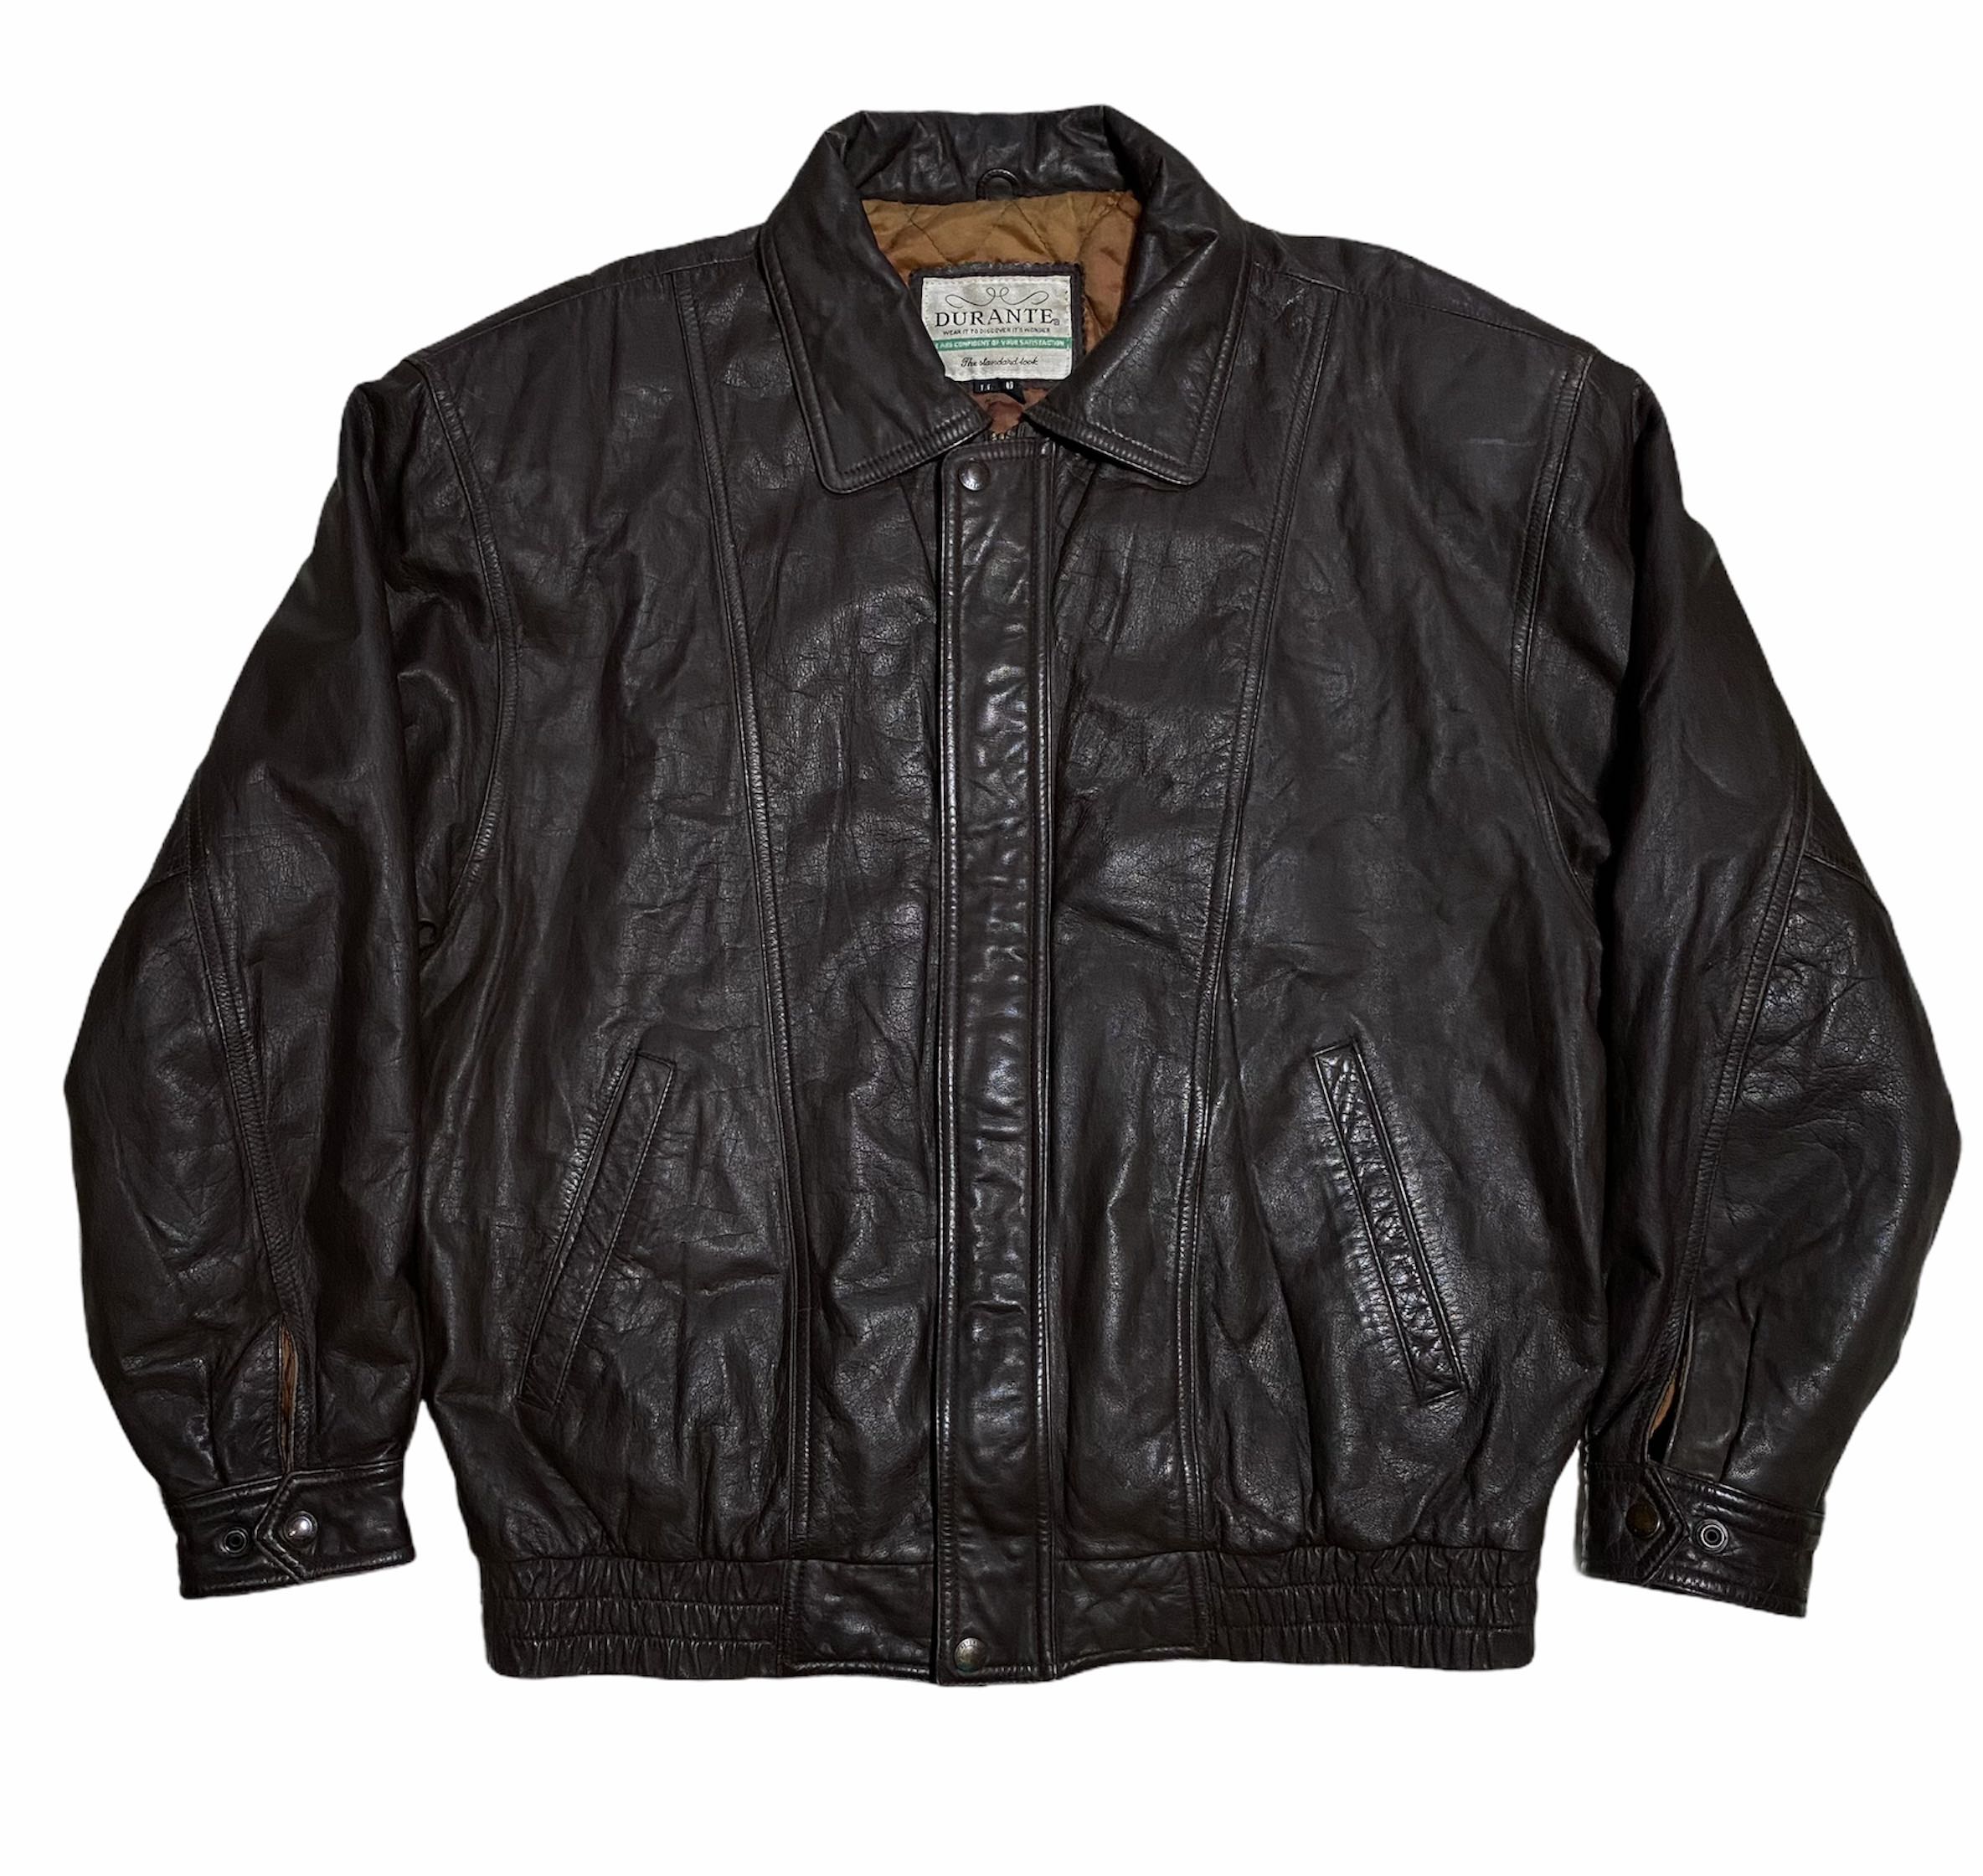 袖丈約59cmdurante old leather bomber jacket 90s - レザージャケット